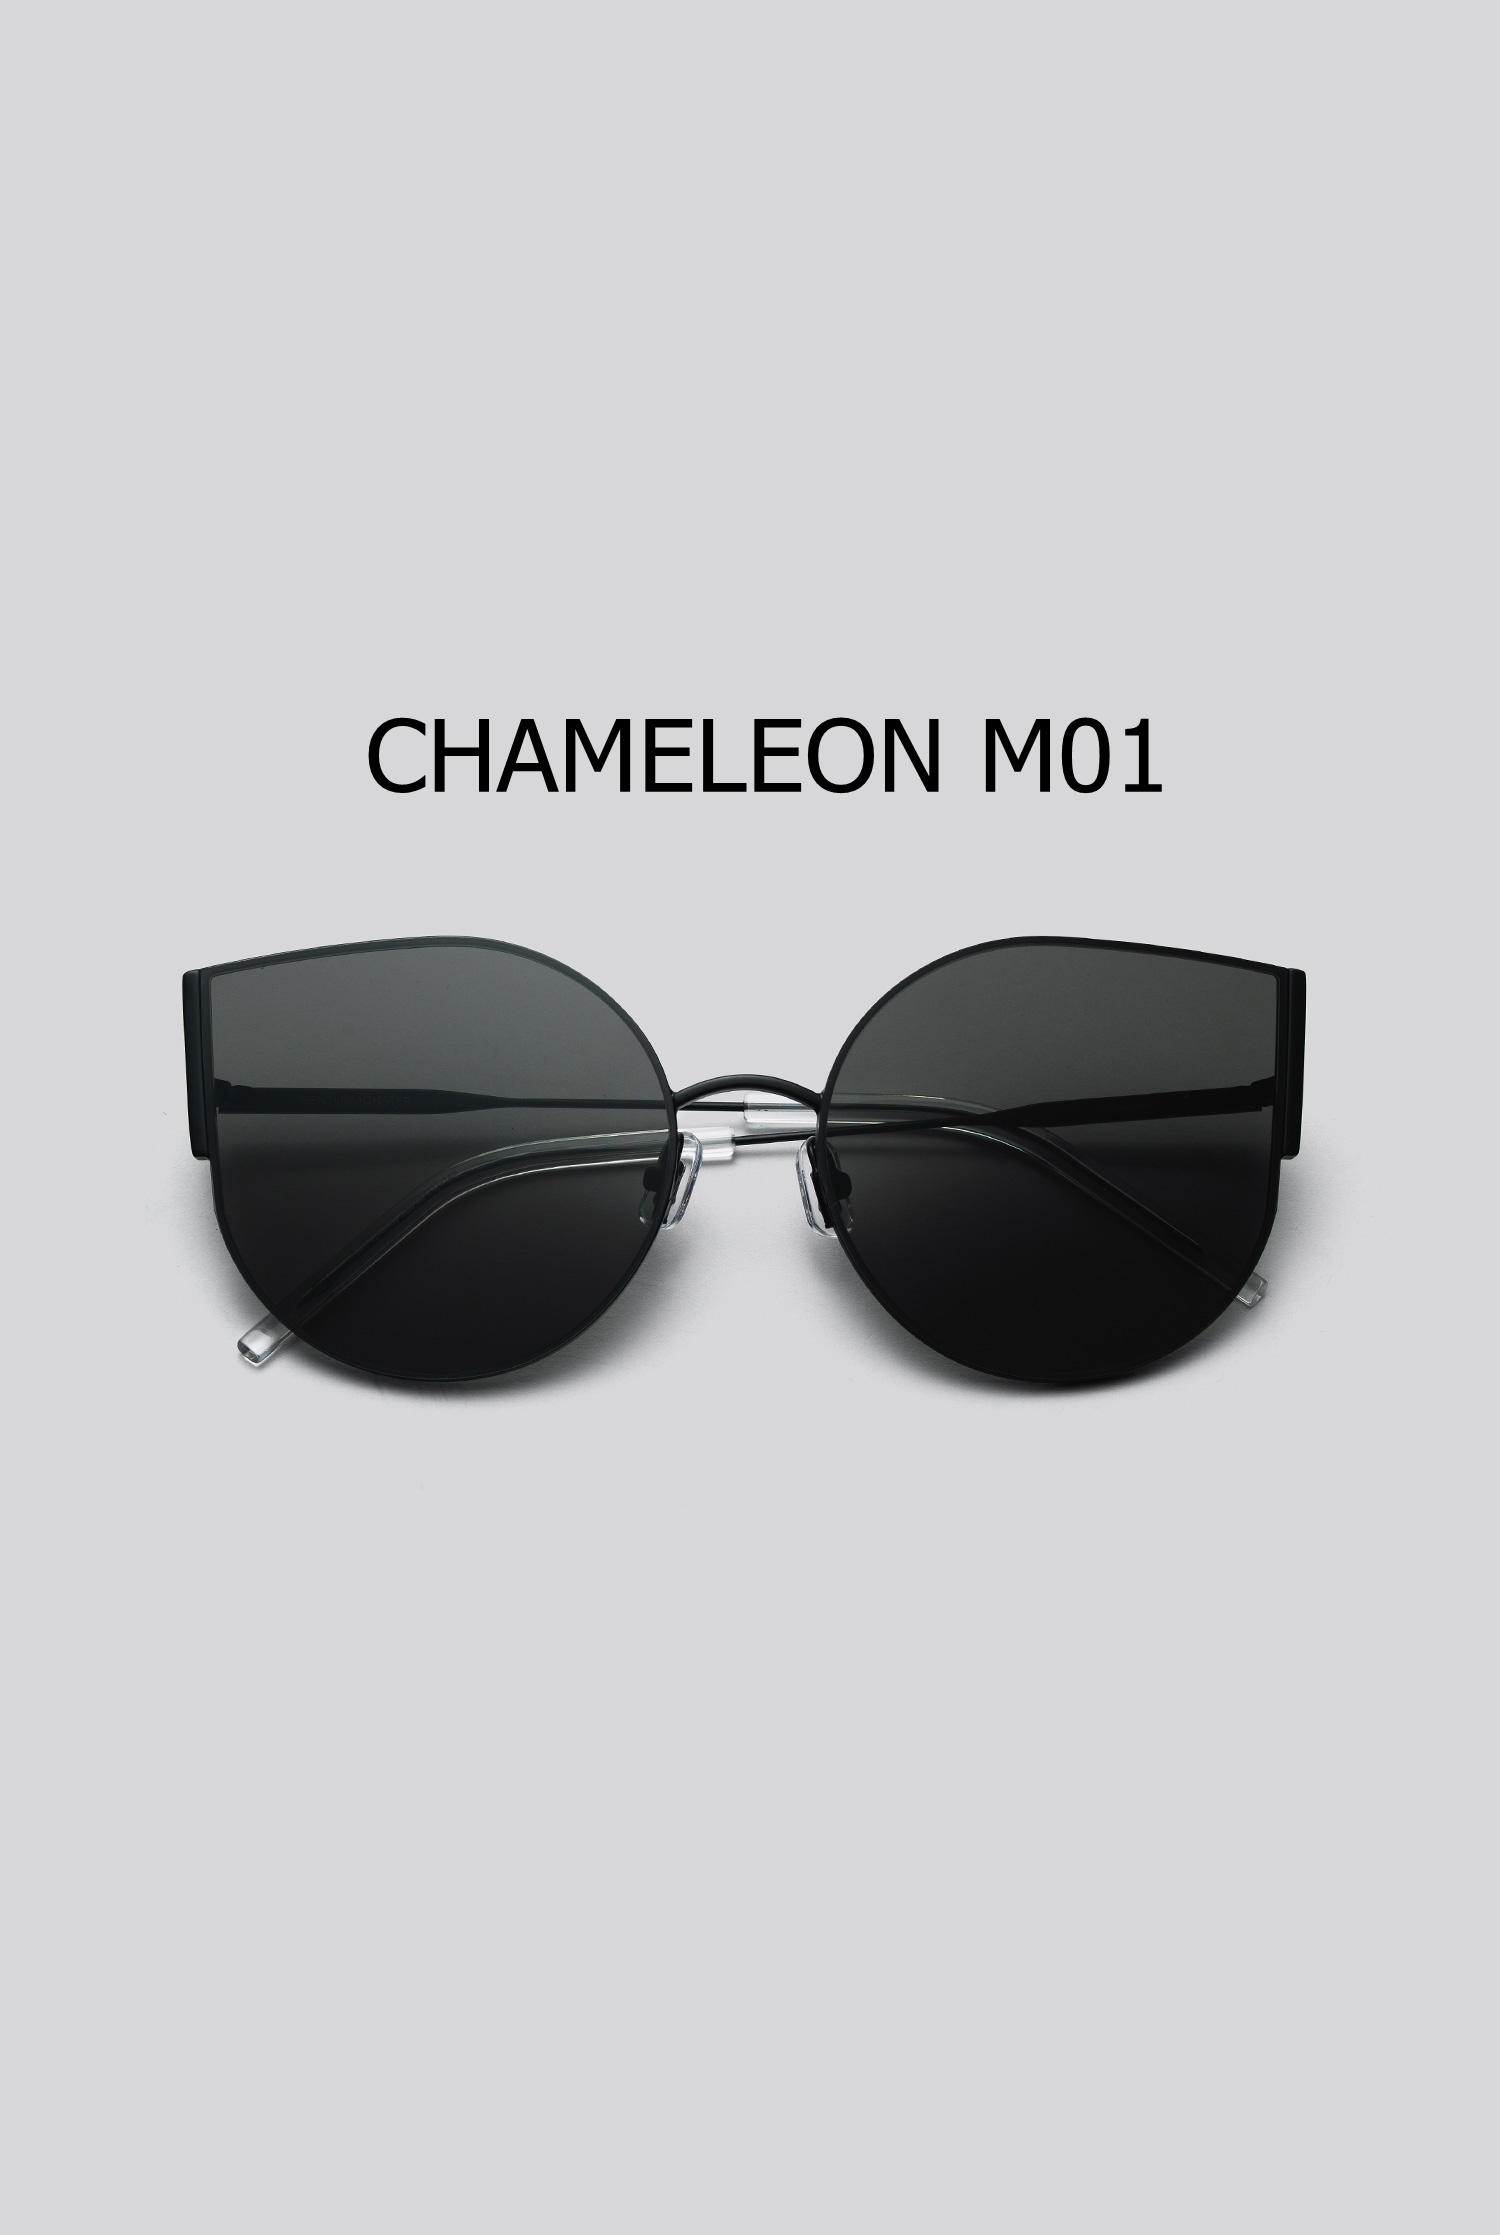 CHAMELEON M01 